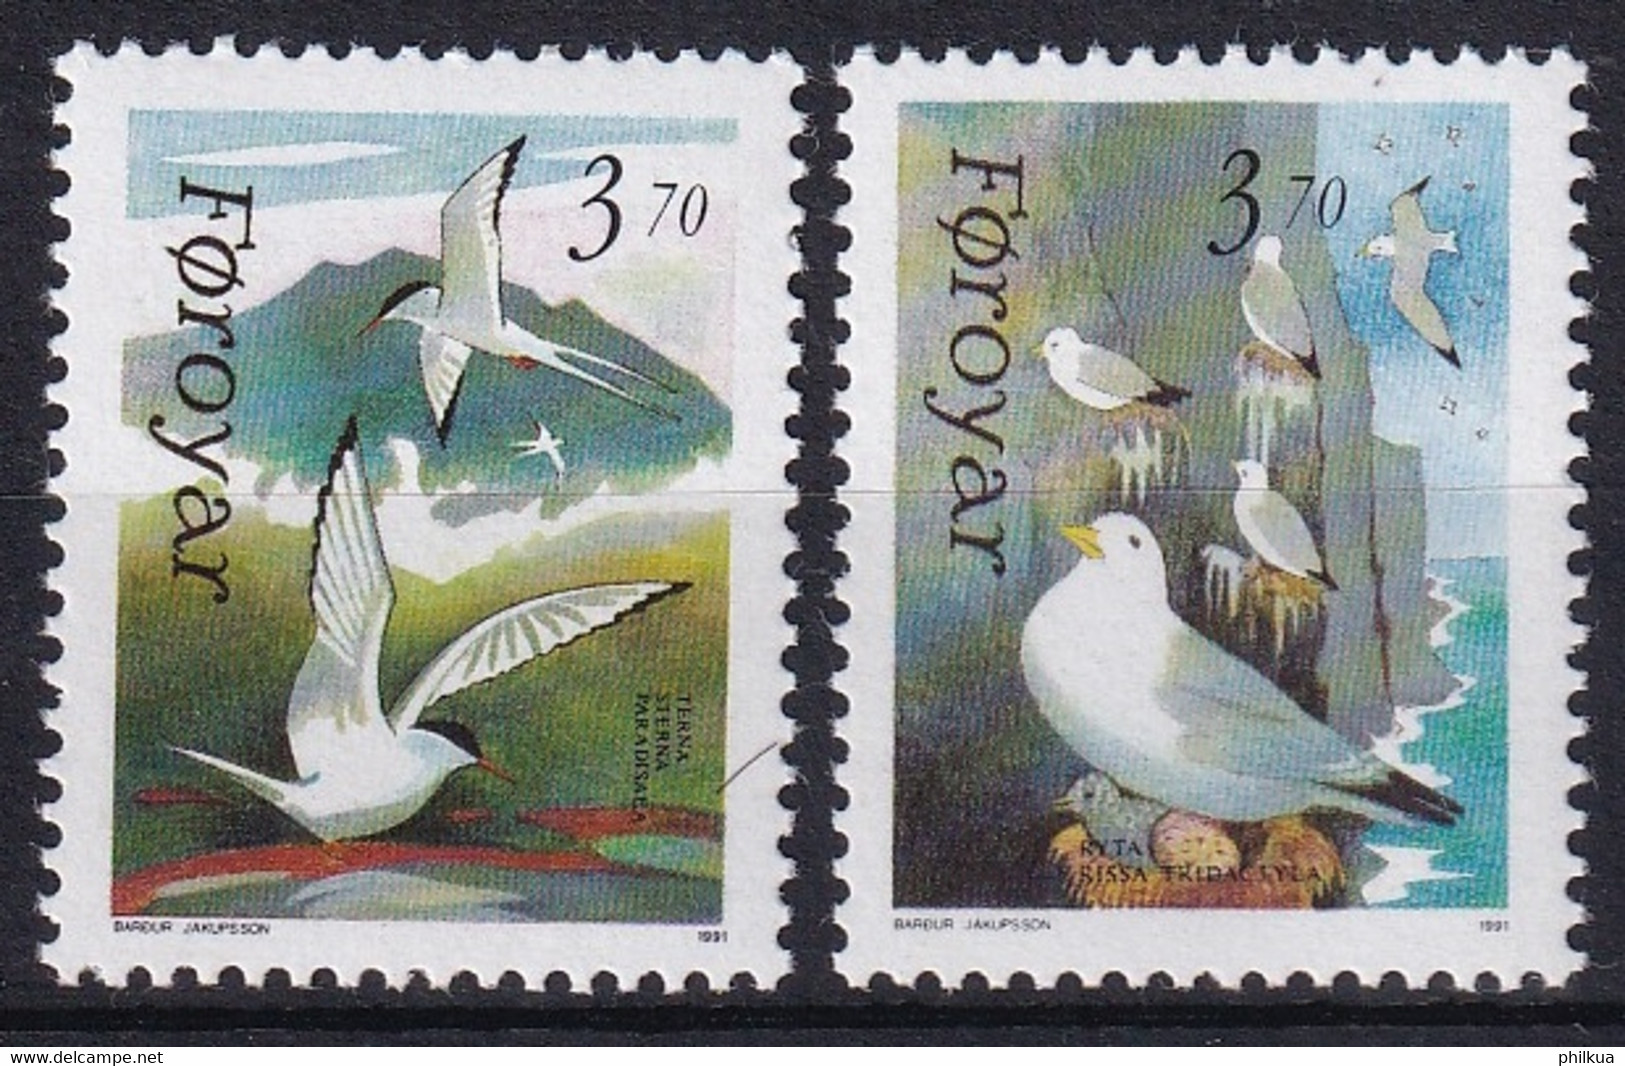 MiNr. 221 - 222 Dänemark Färöer1991, 3. Juni. Seevögel - Postfrisch/**/MNH - Färöer Inseln